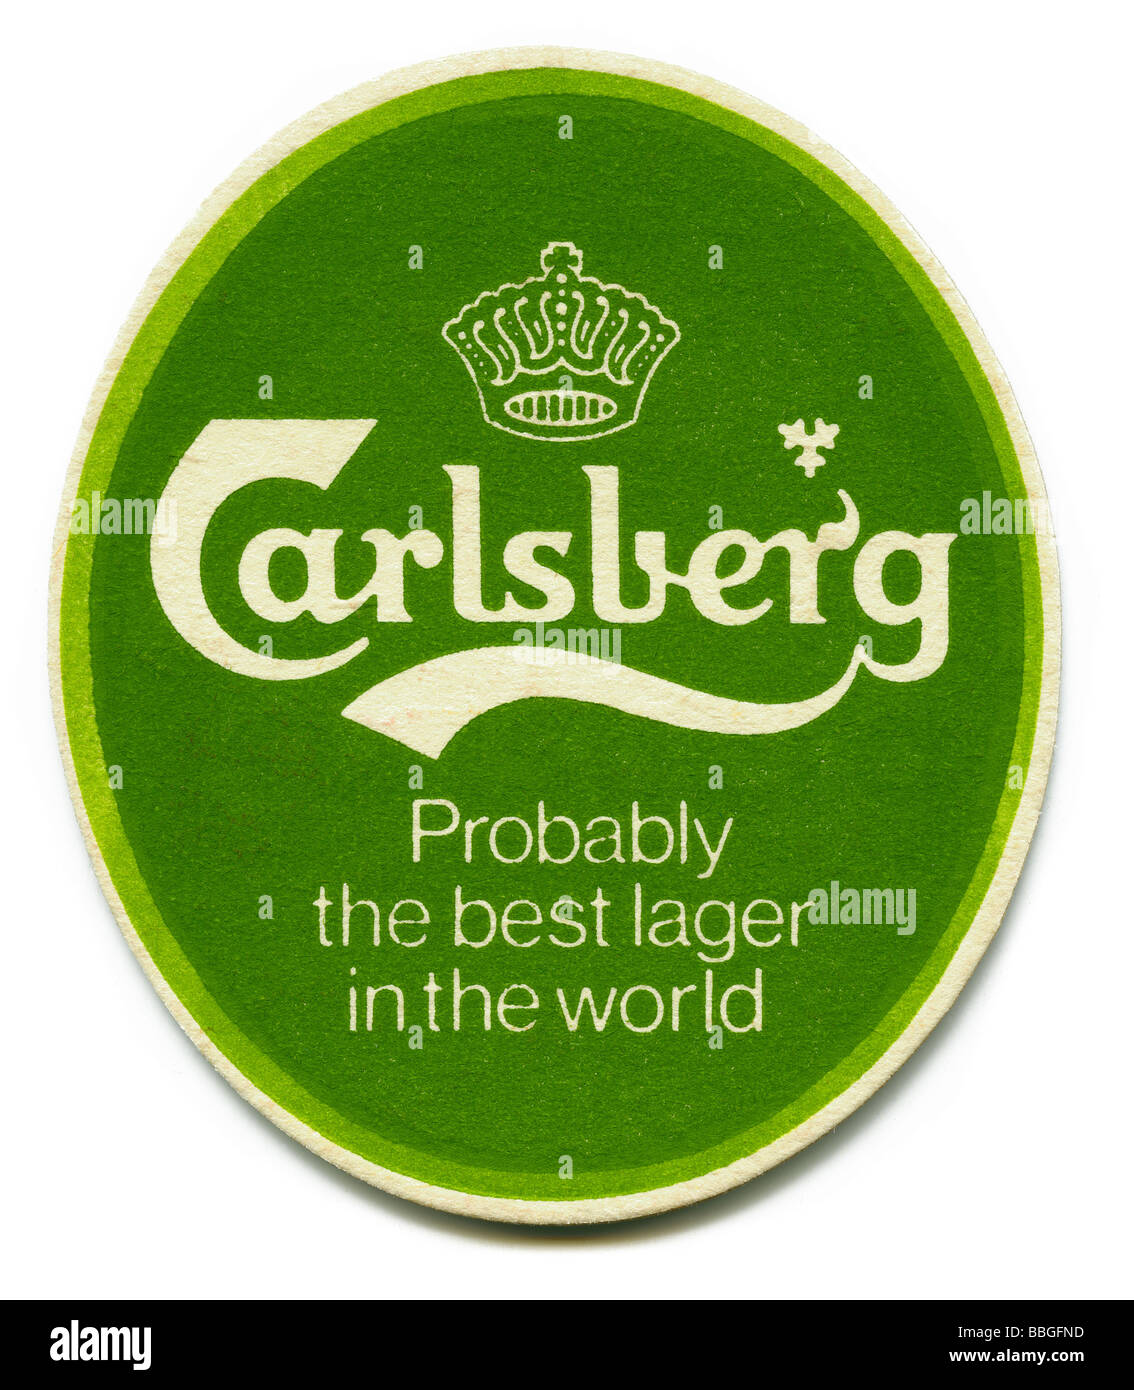 Vecchio beermat per birre Carlsberg, Copenhagen, Danimarca Foto Stock